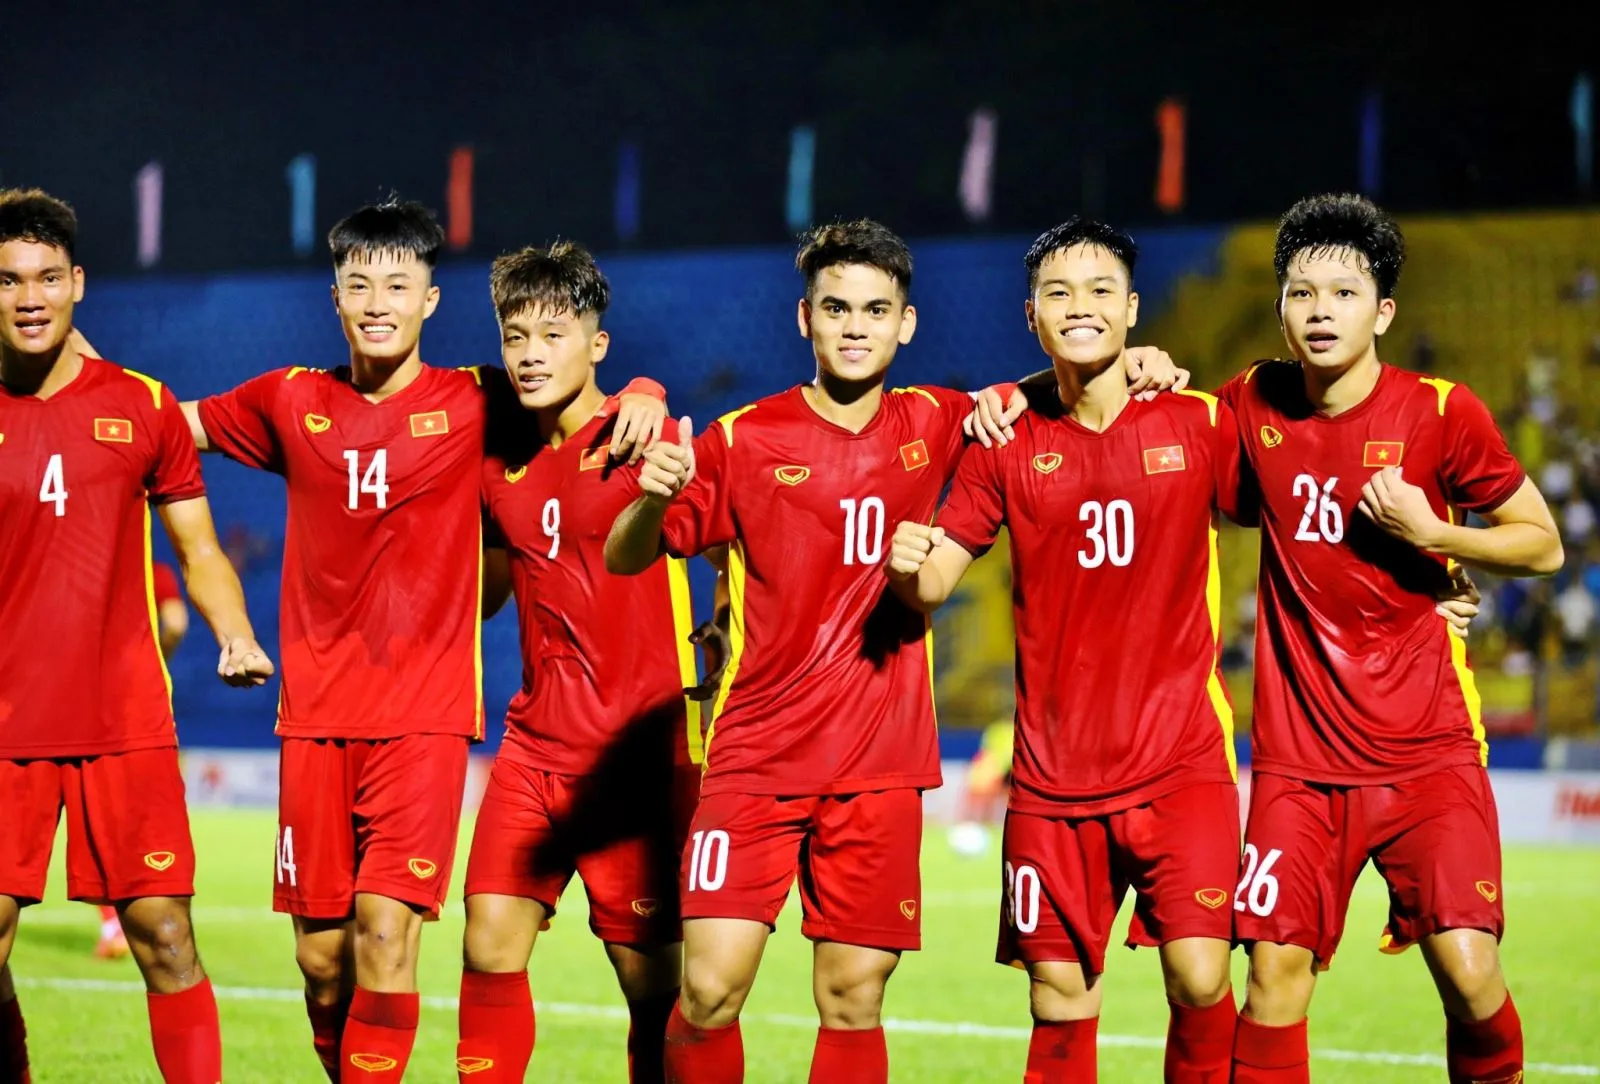 HLV Văn Sỹ được Nam Định 'tri ân' - U20 Việt Nam đá giao hữu với U20 Palestine